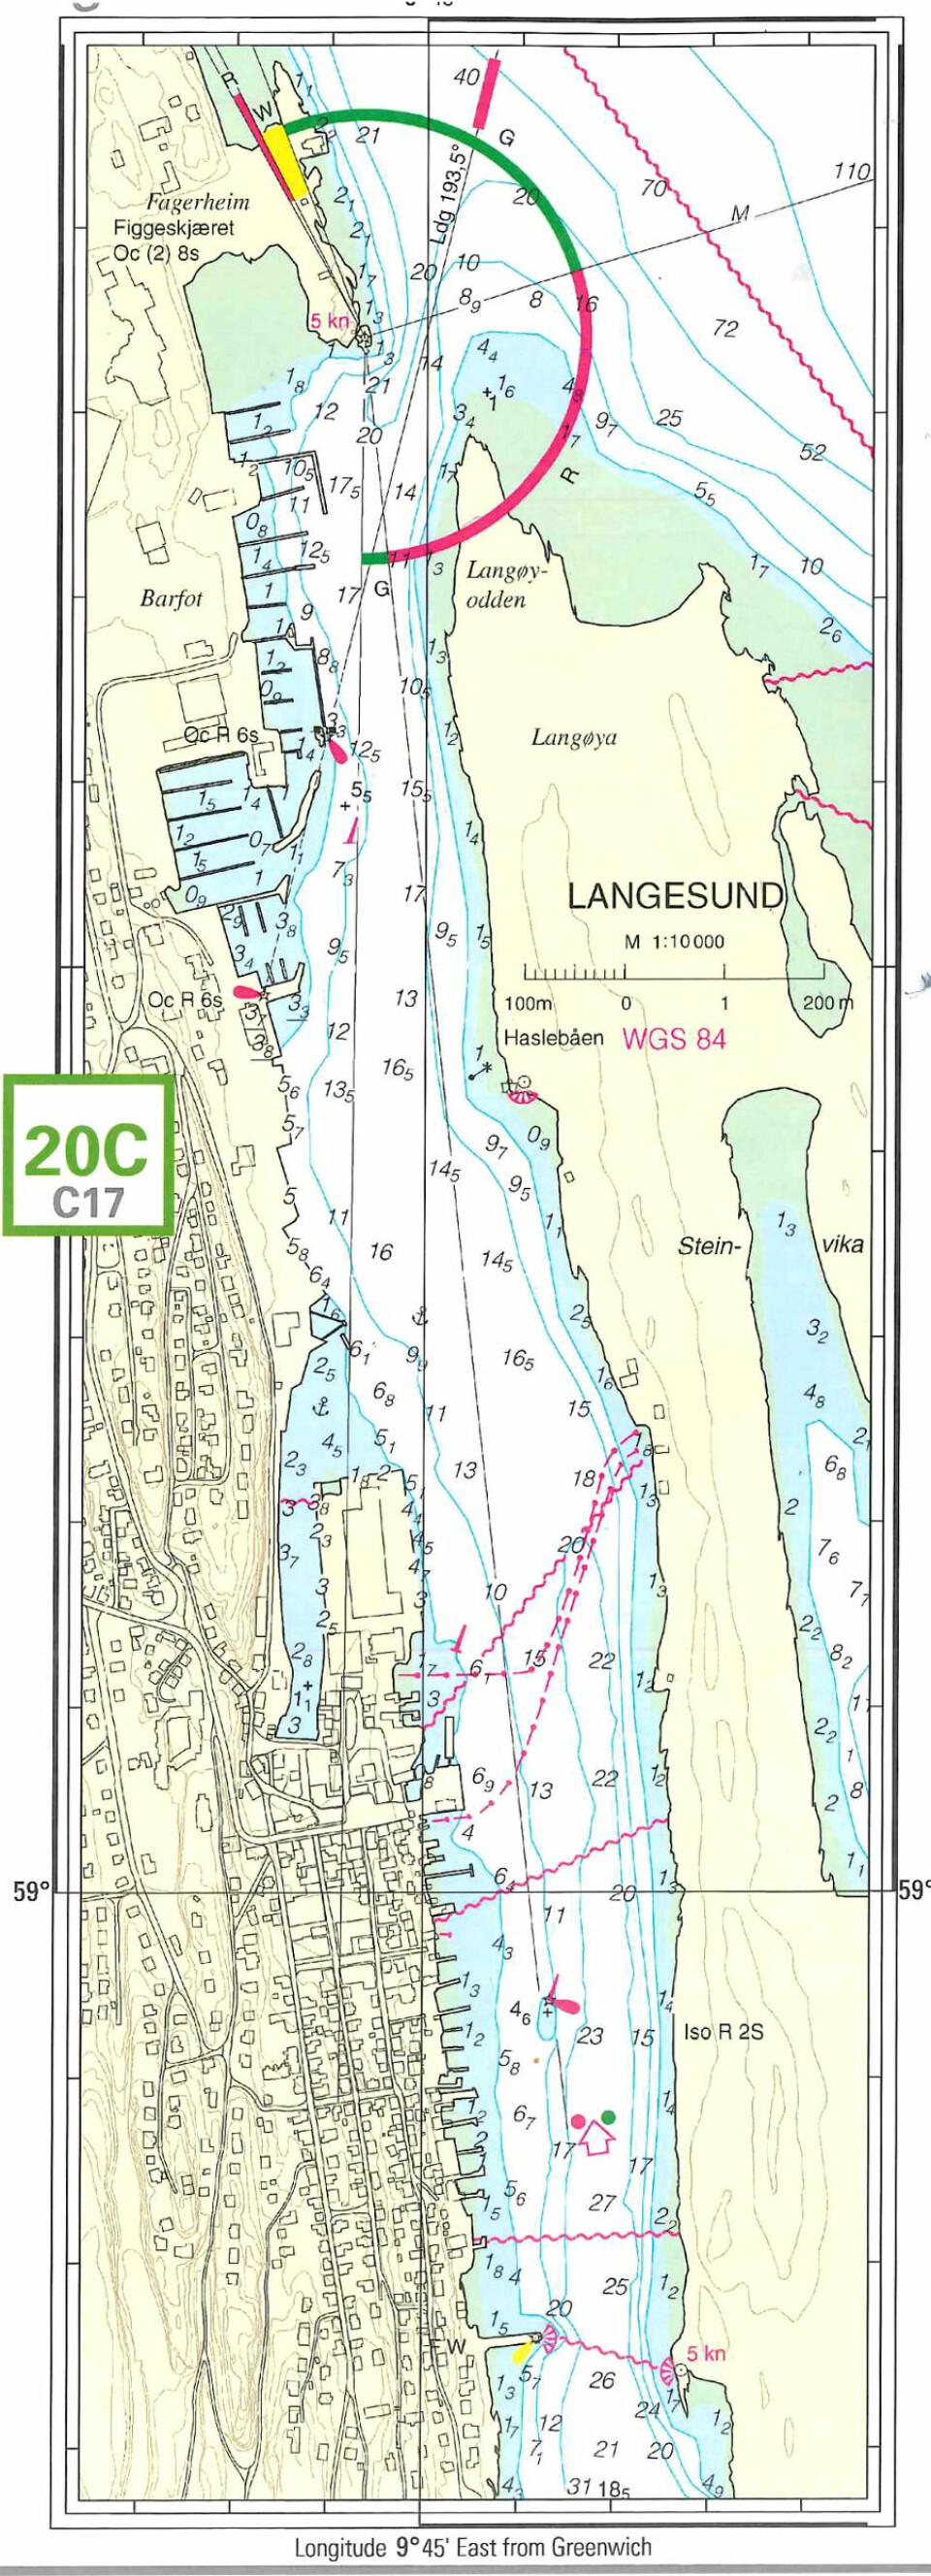 DETALJER: Langesund i forminsket detaljrikt havnekart i 1:10 000.